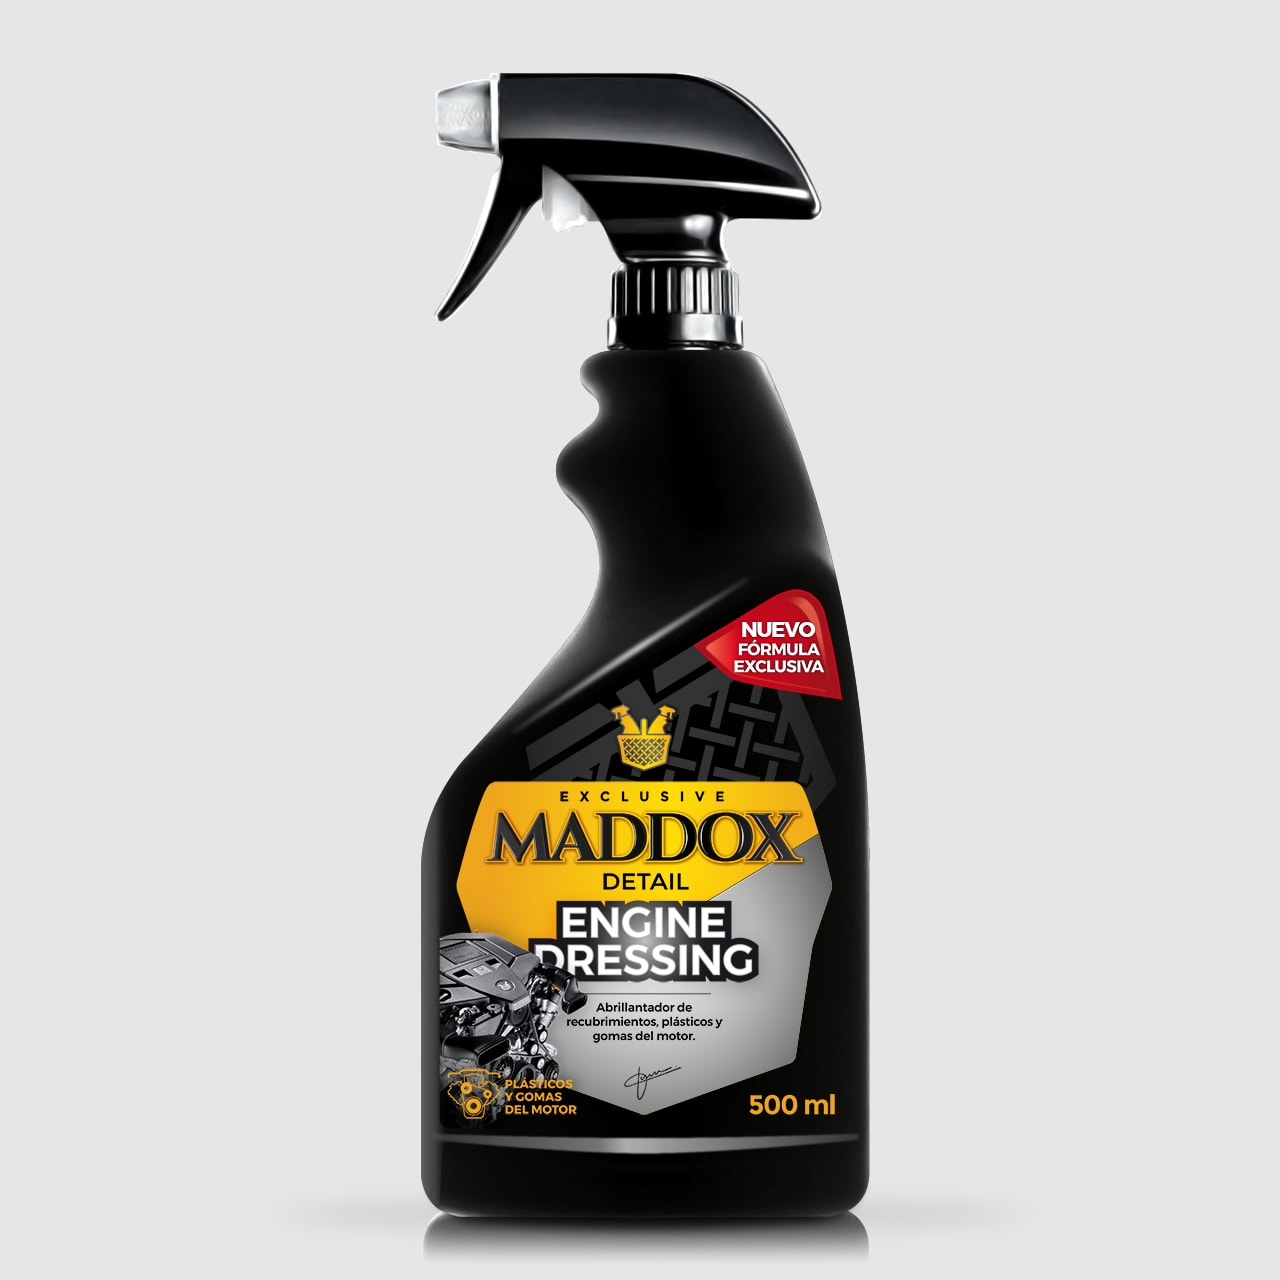 Maddox Detail - MADDOX DETAIL-ENGINE DRESSING-Abrillantador de recubrimientos, plásticos y gomas del motor